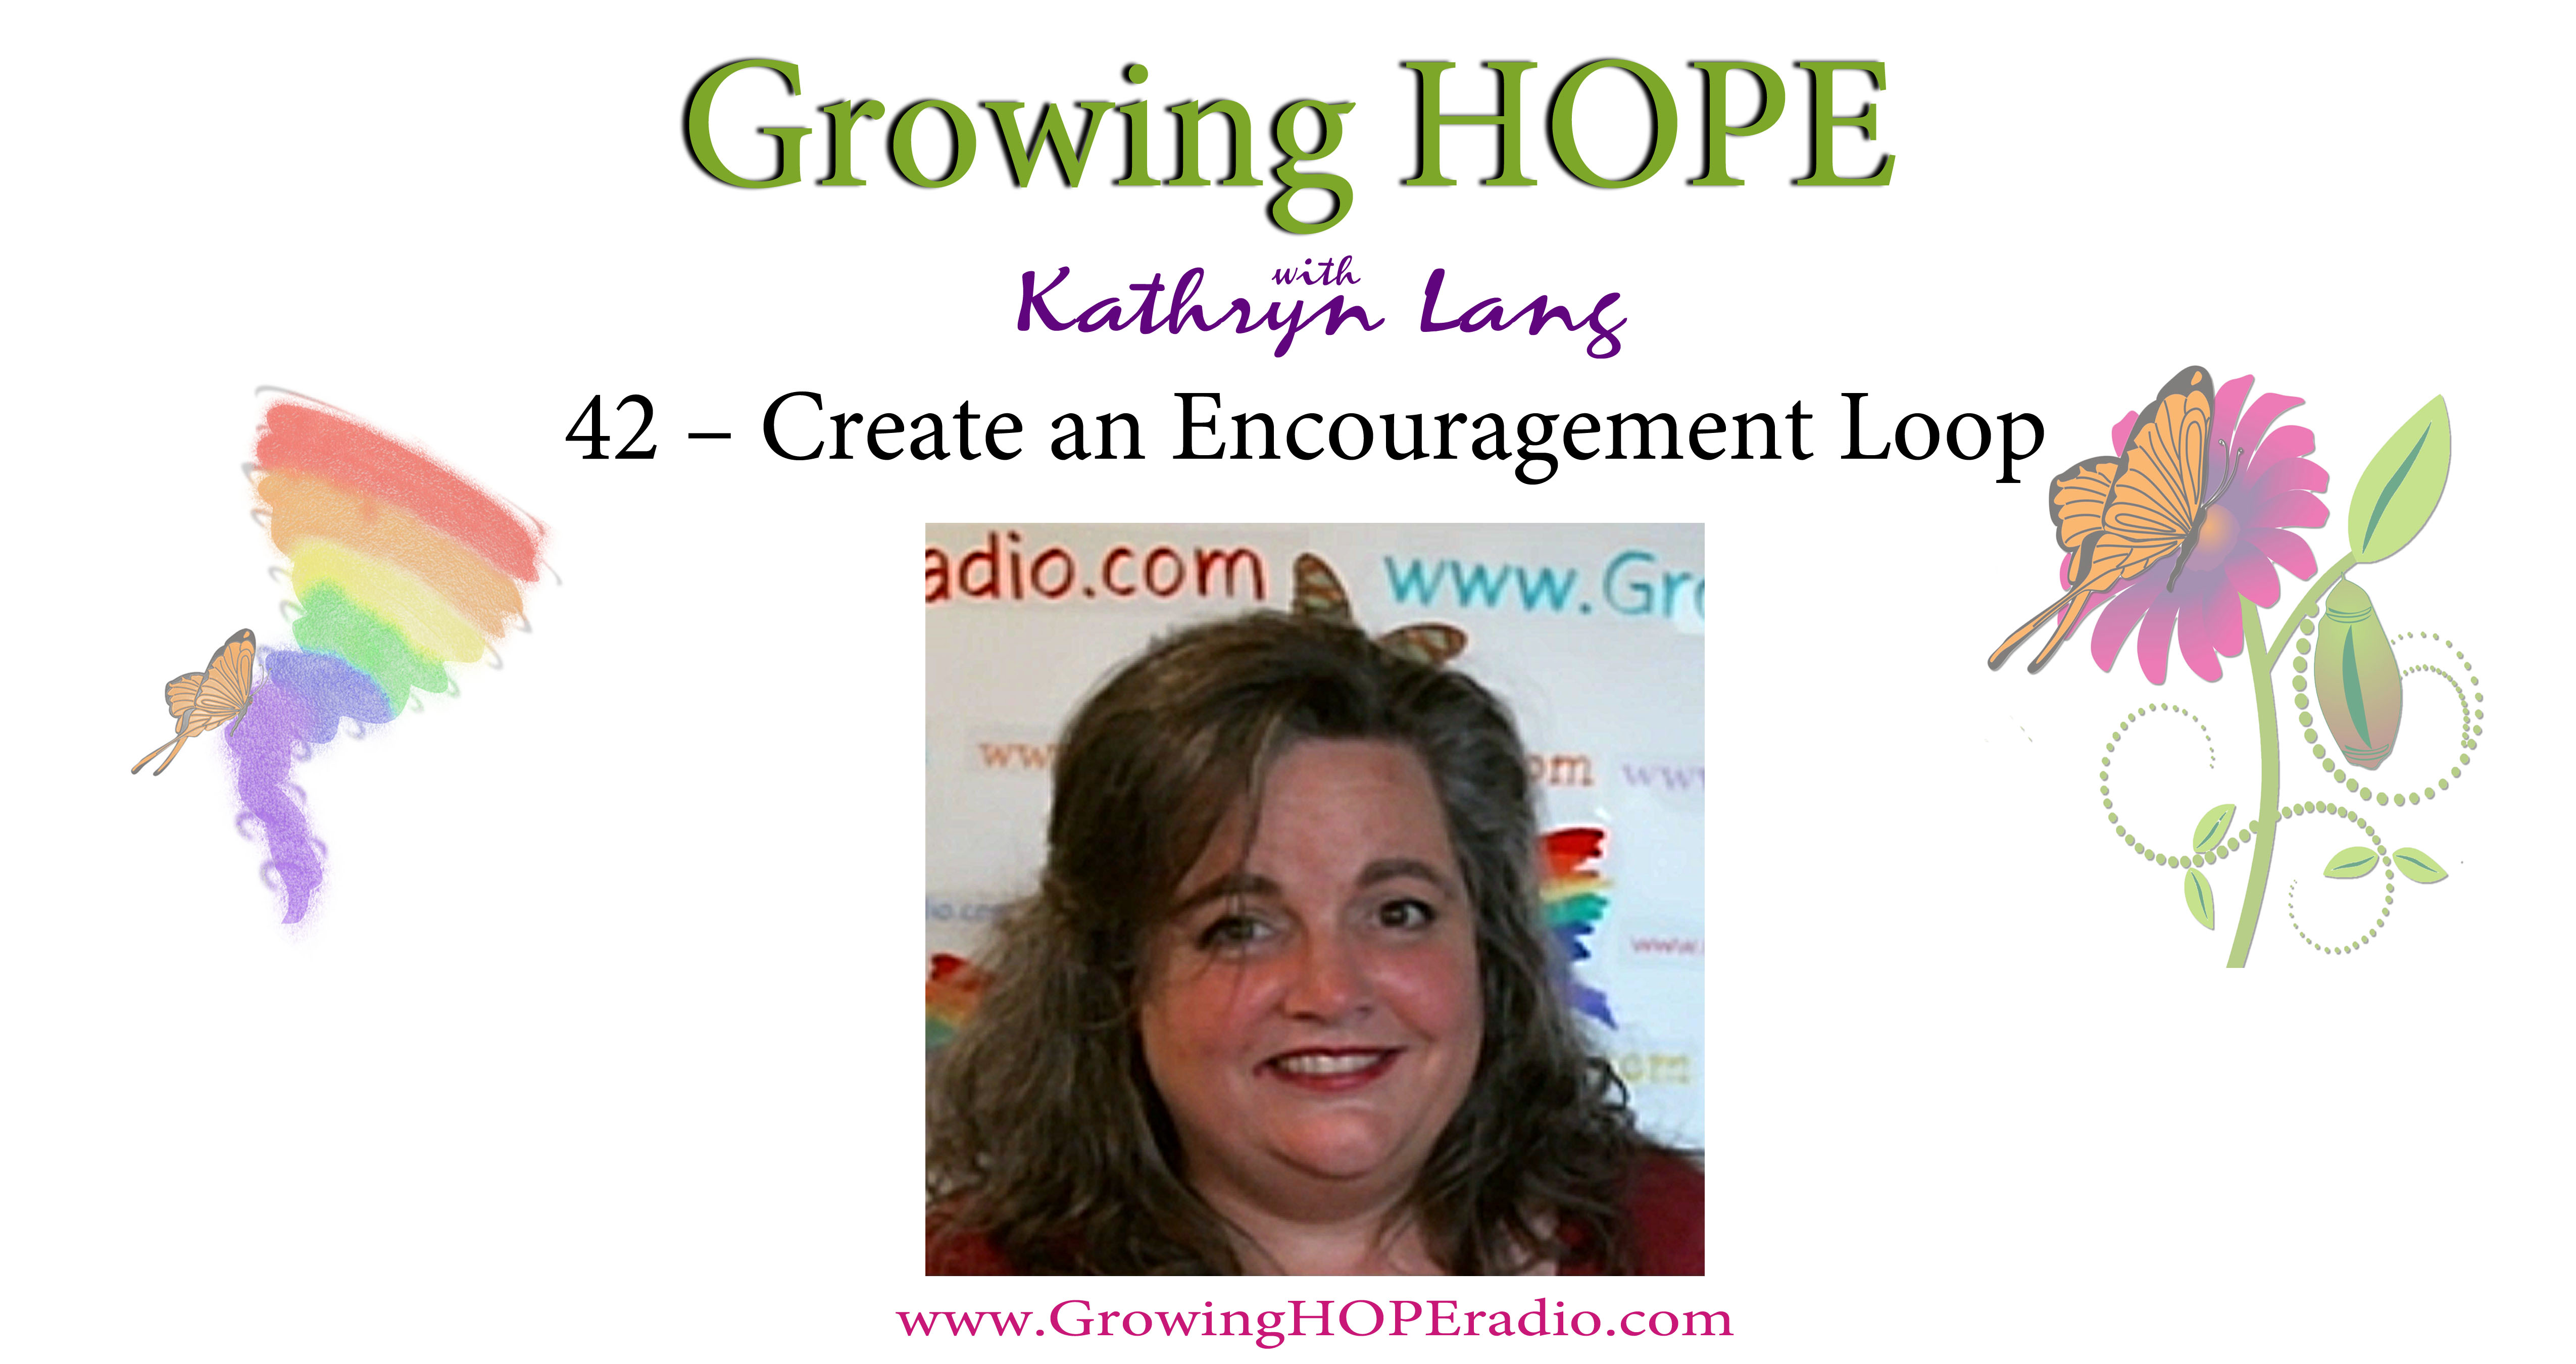 Growing HOPE Daily - header - 42 - encouragement loops